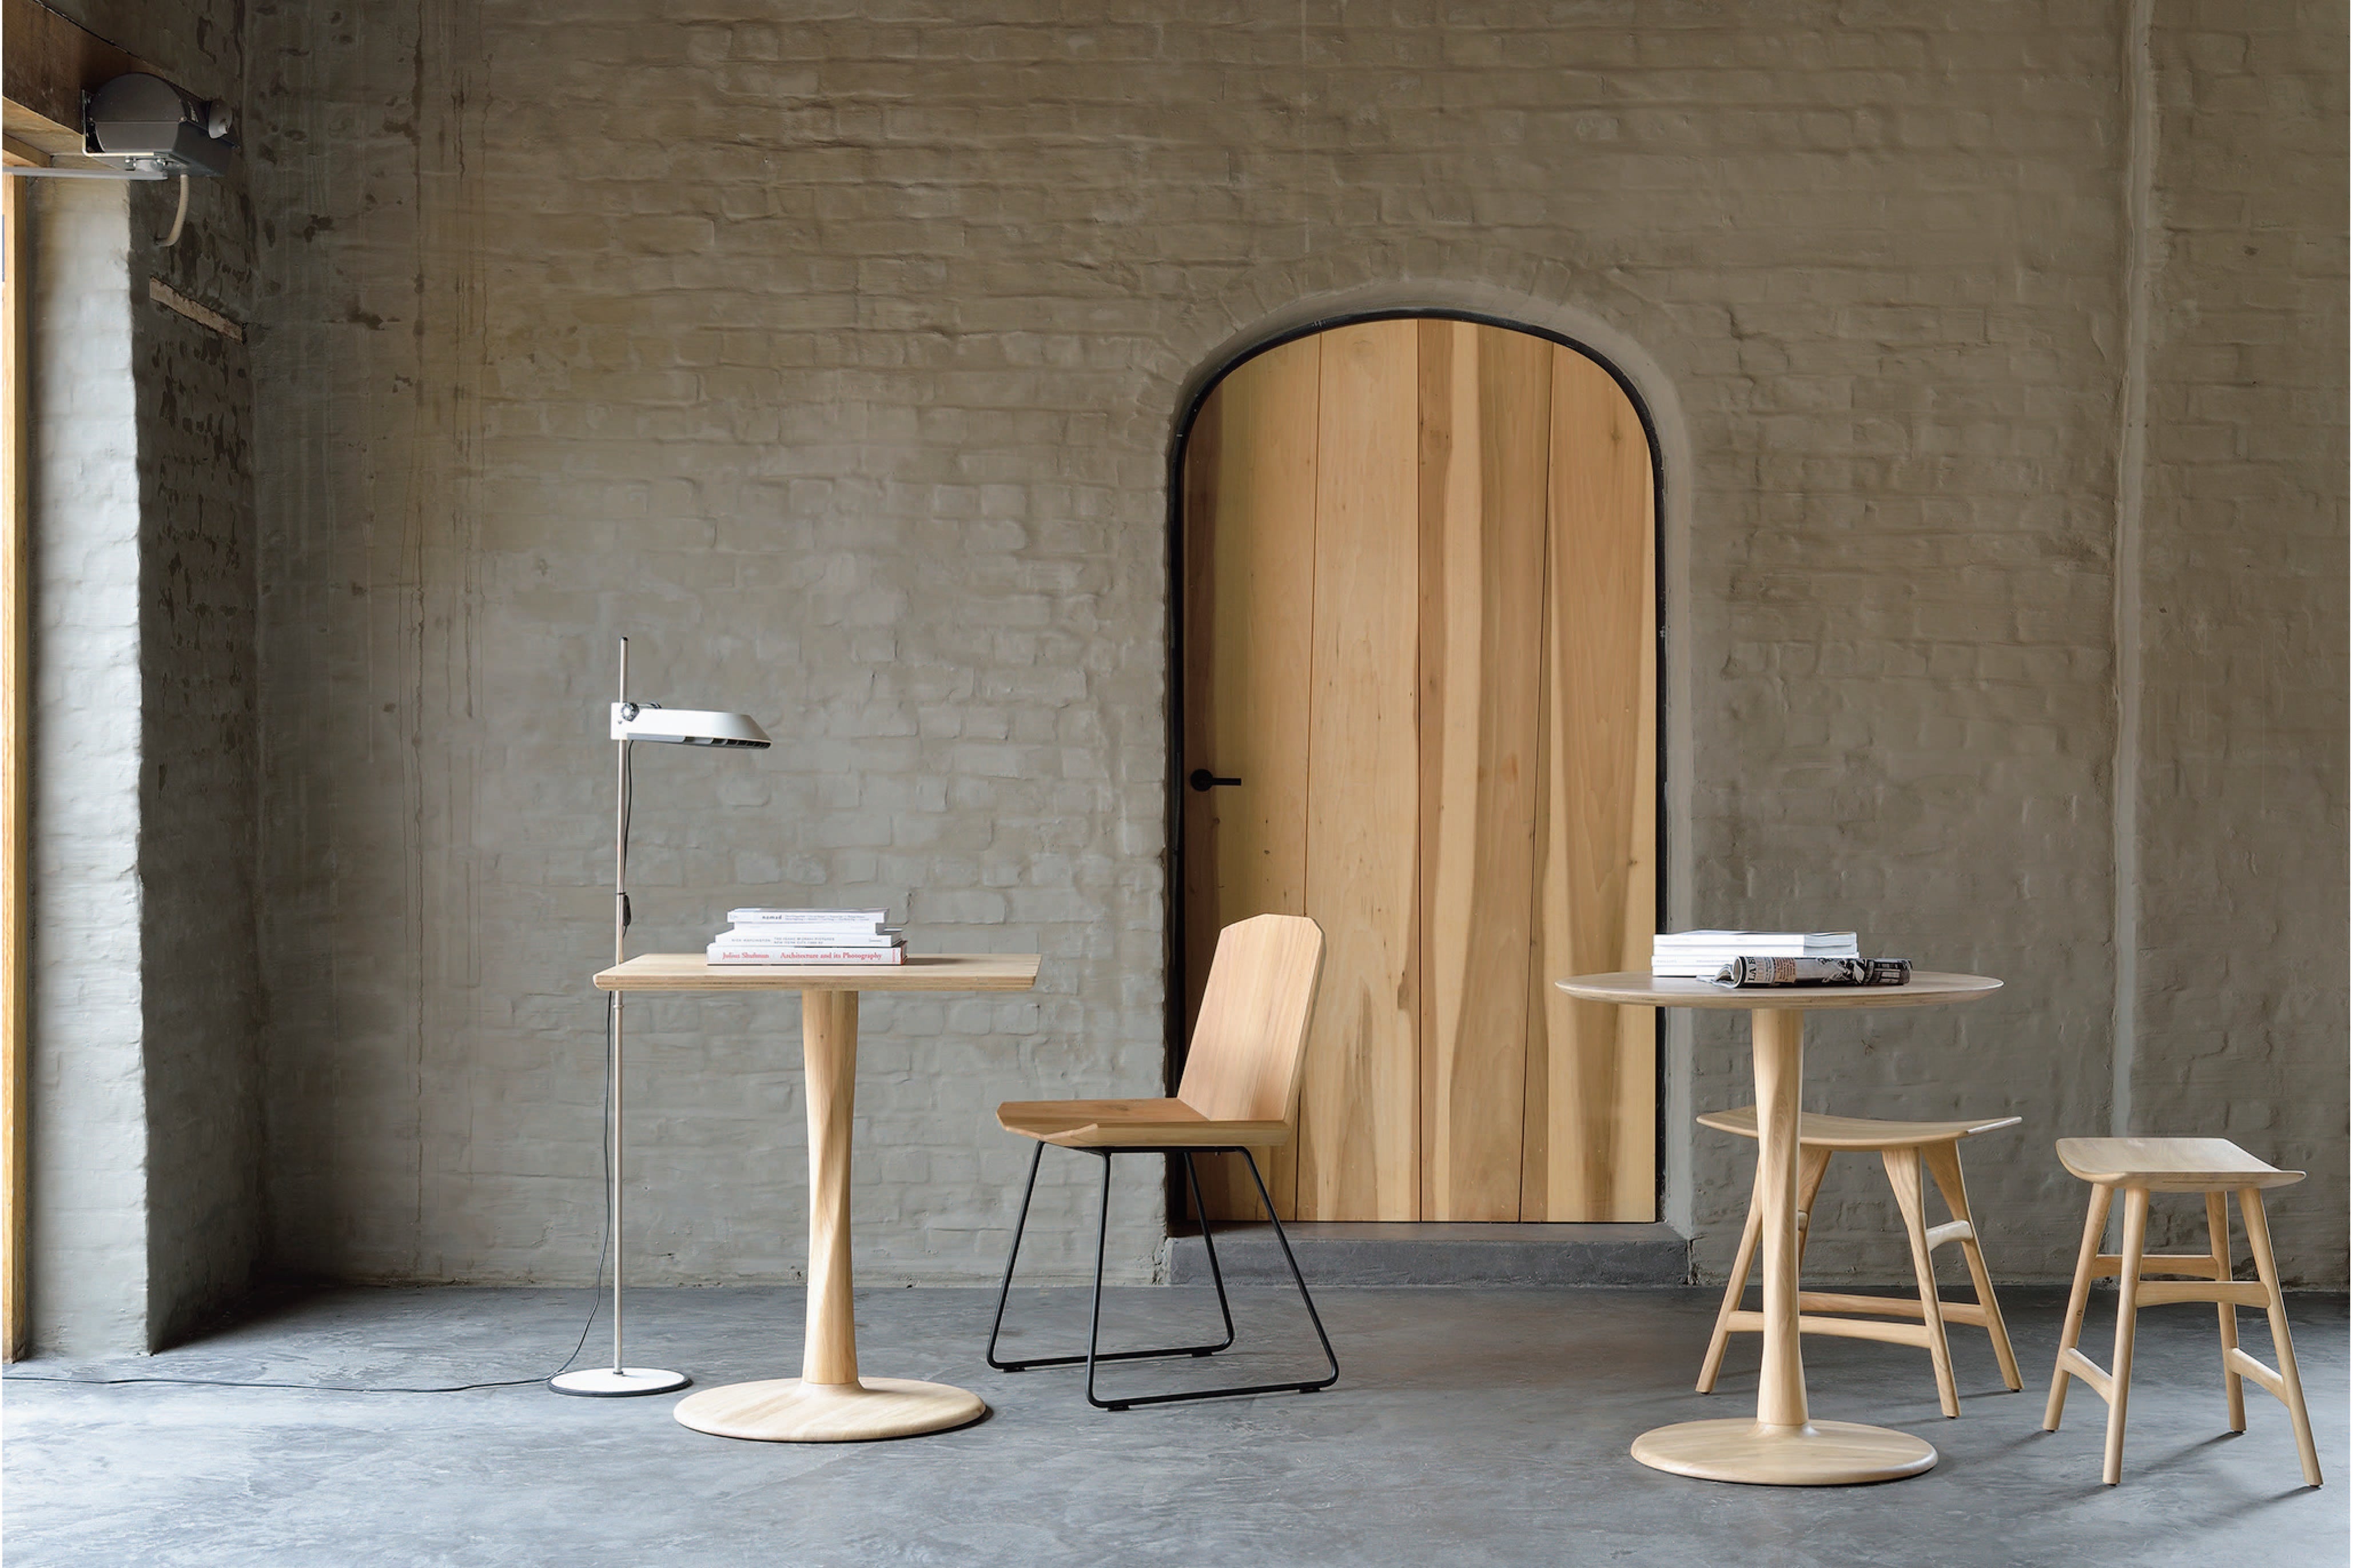 比利時原裝進口實木傢俬 - 餐桌系列 - Torsion系列圓形橡木餐桌